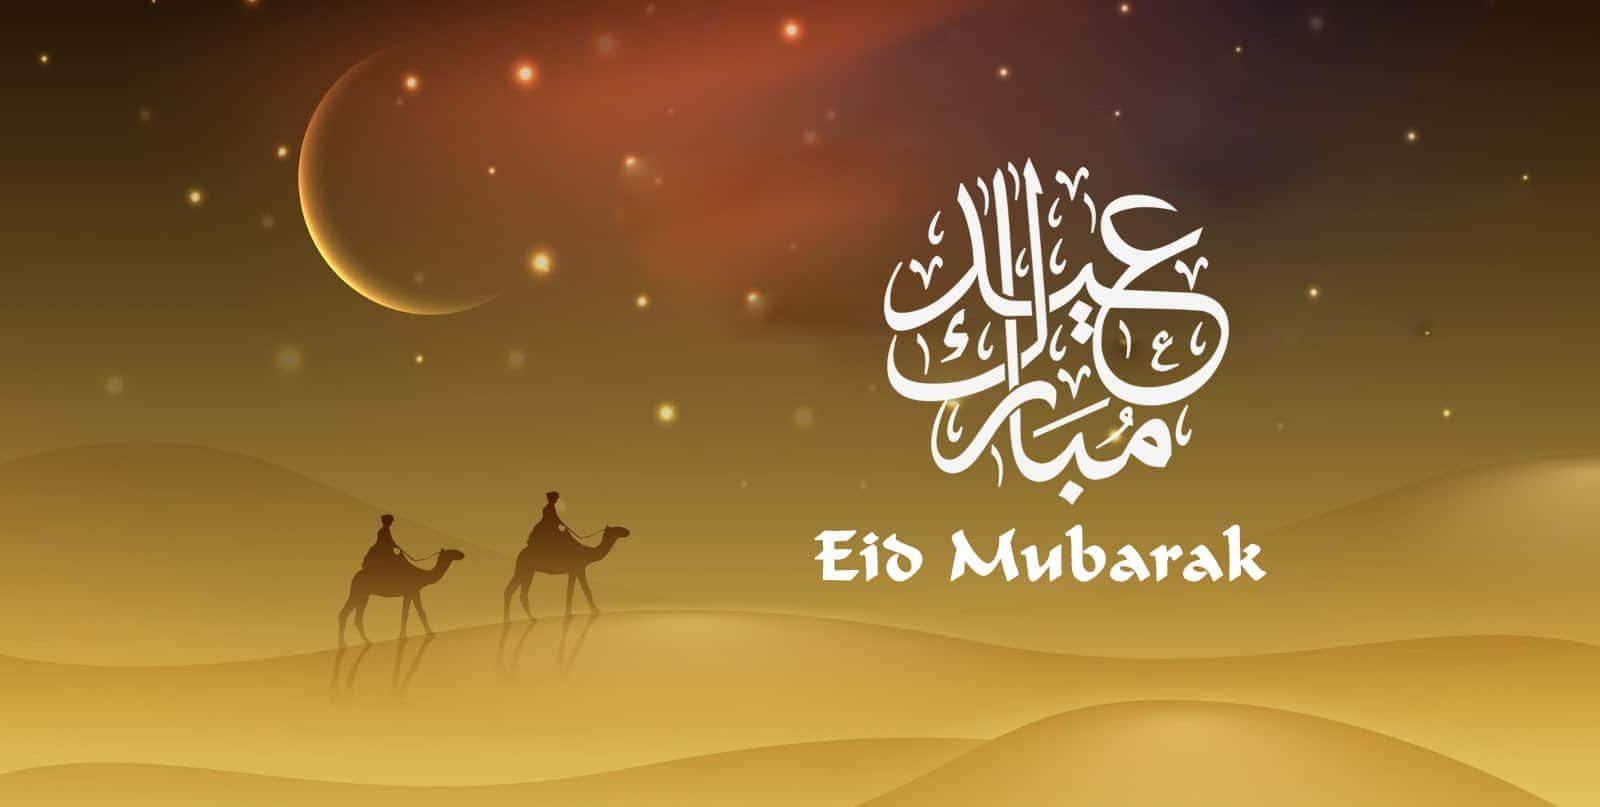 Ichwünsche Allen Ein Fröhliches Eid Mubarak!